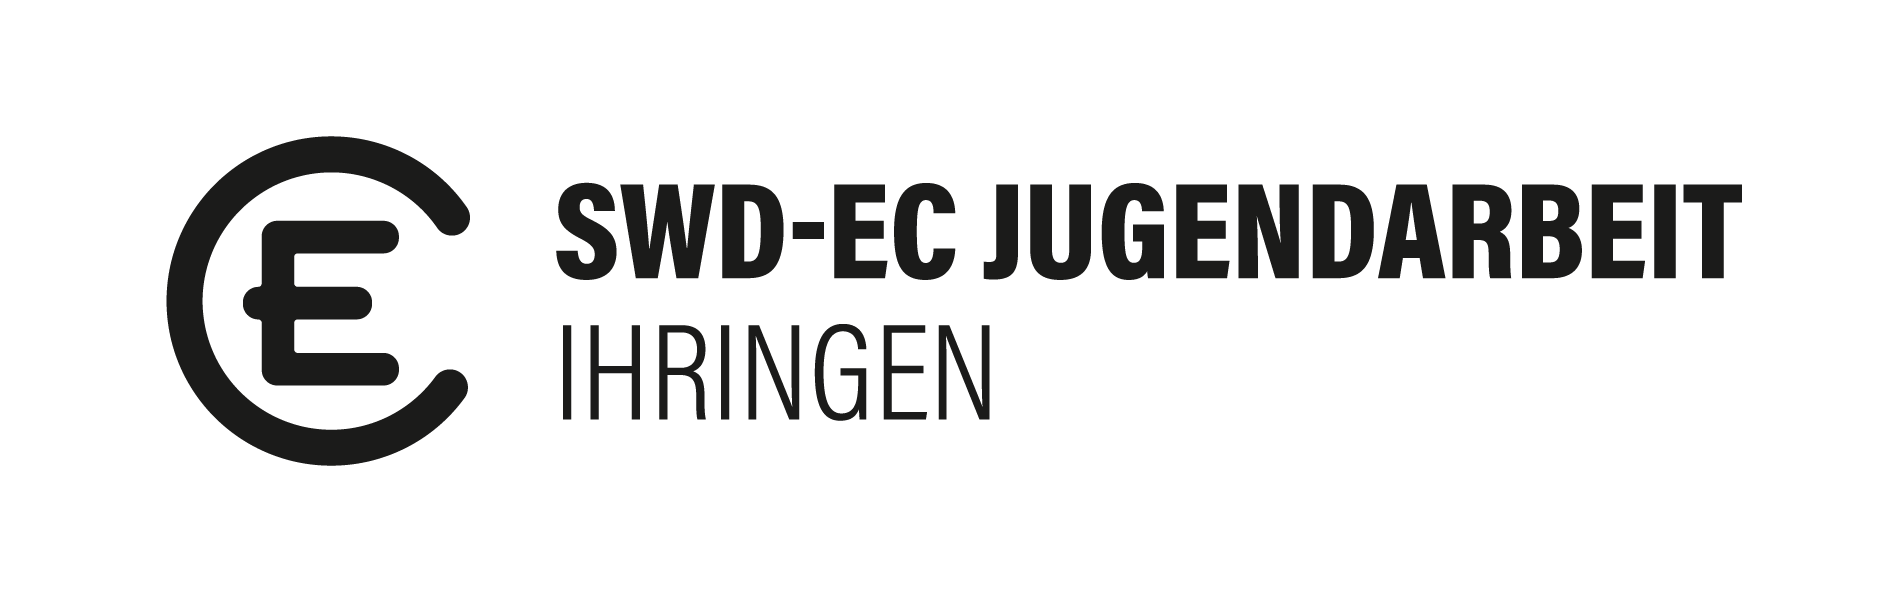 EC Ihringen